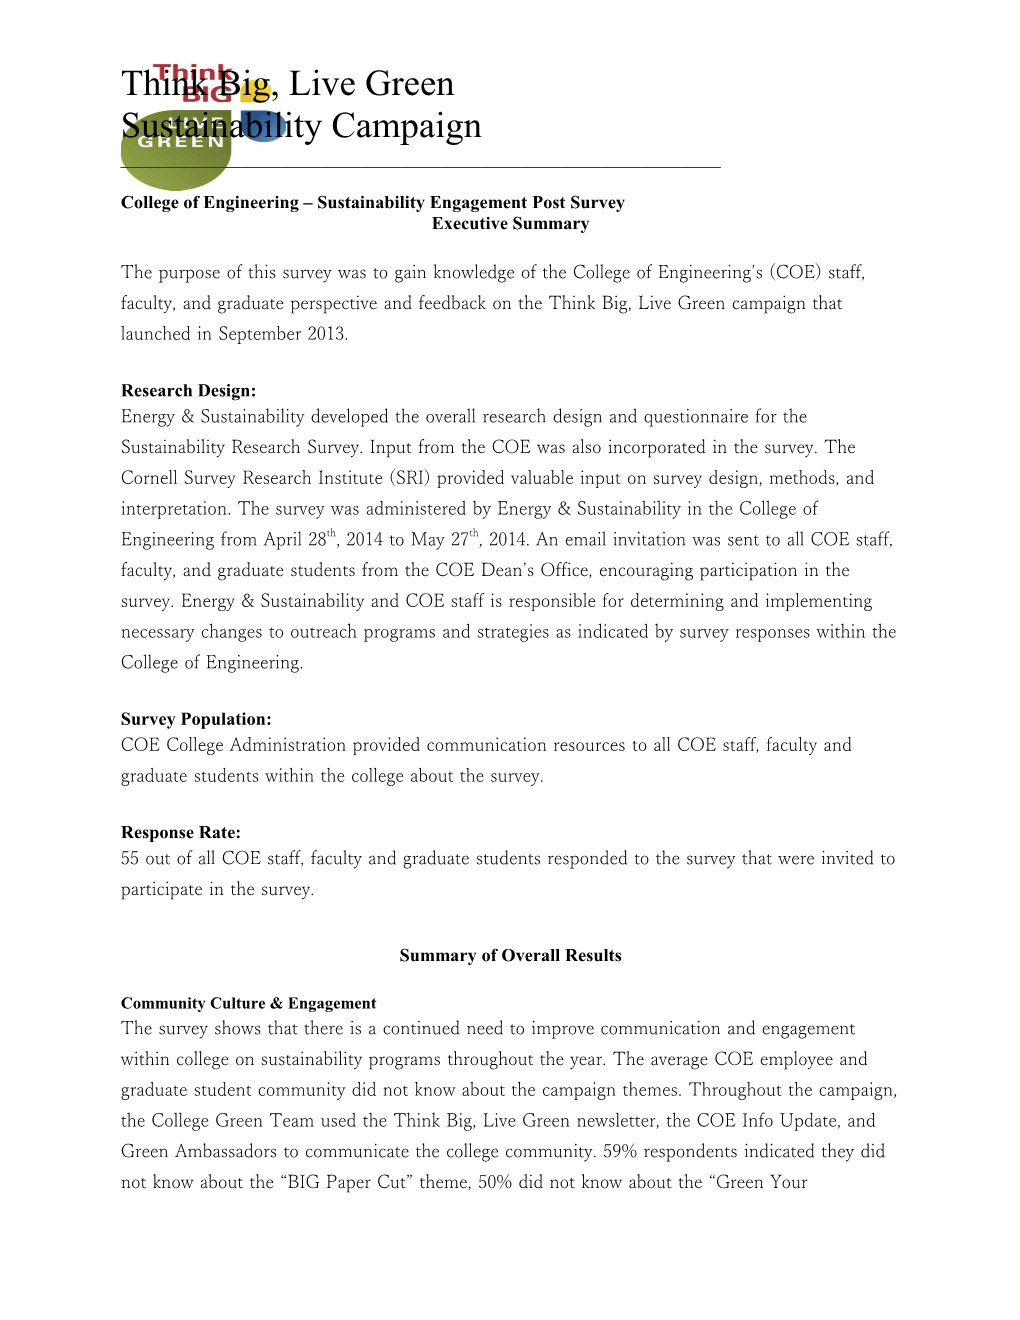 COE Sustainability Engagement Post Survey - Executive Summary